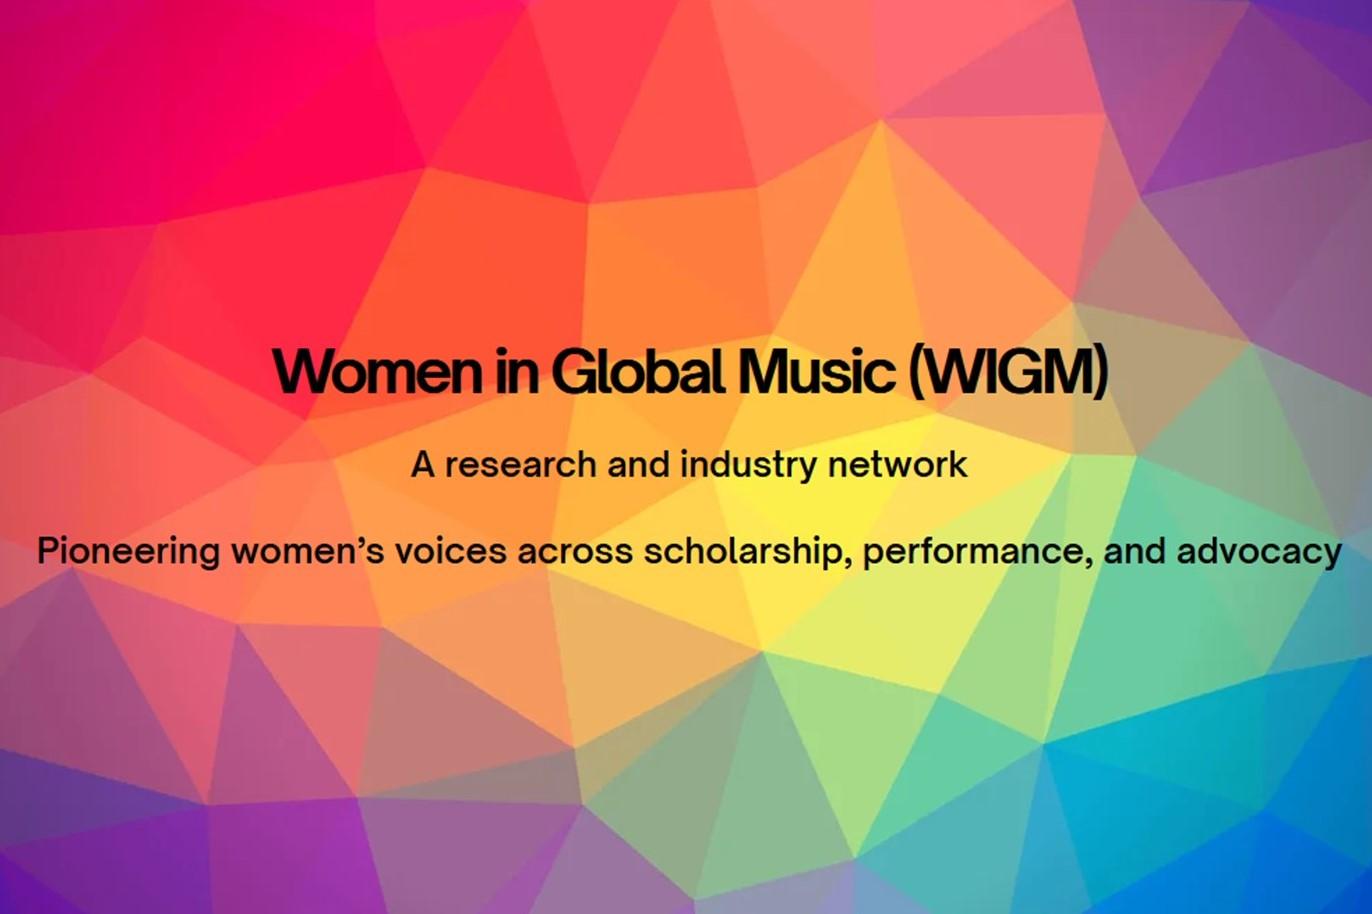 Women in Global Music Network